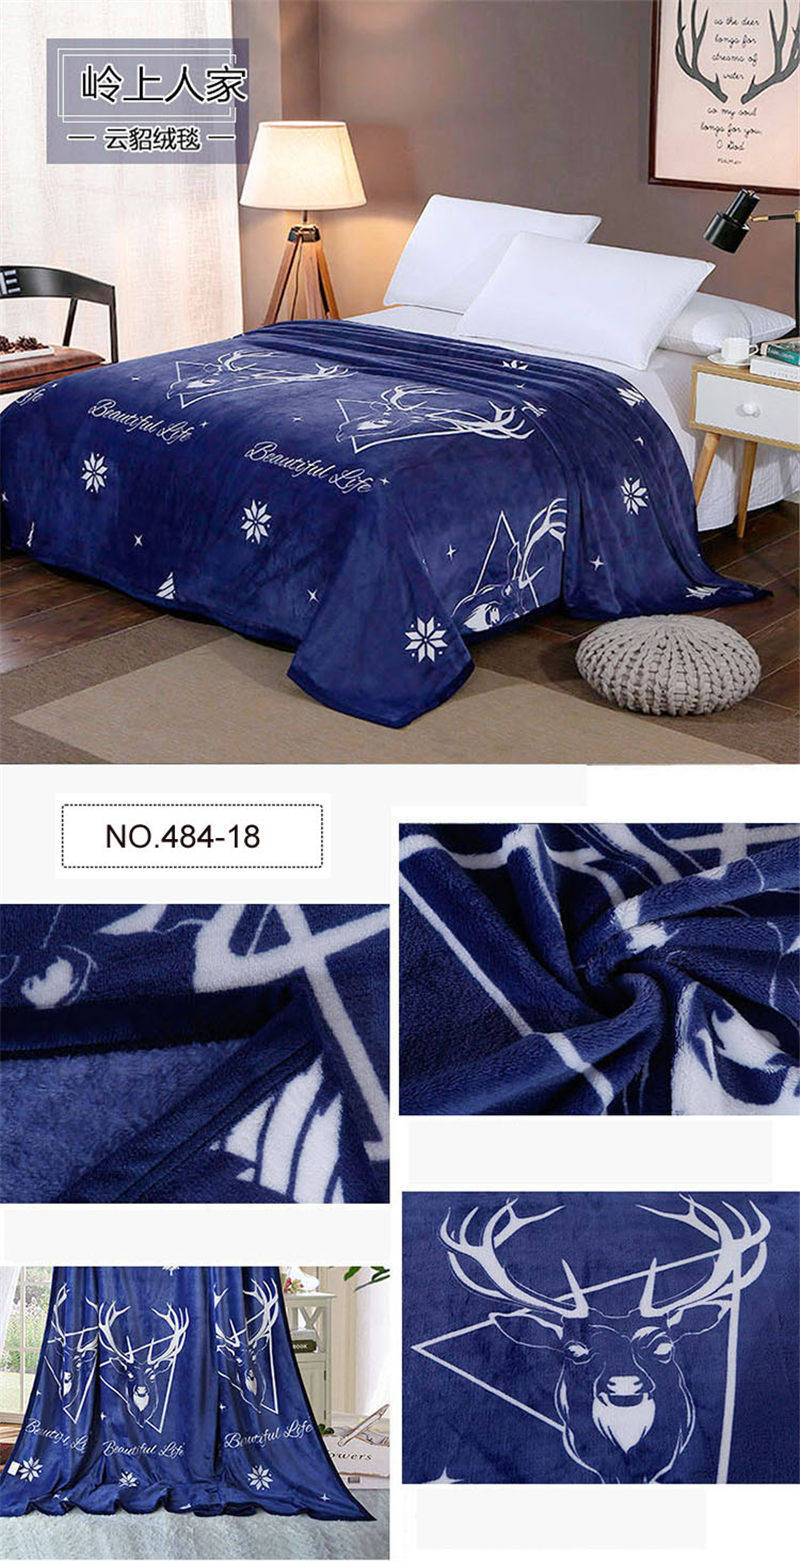 Fleece Blankets Wholesale Comfortable